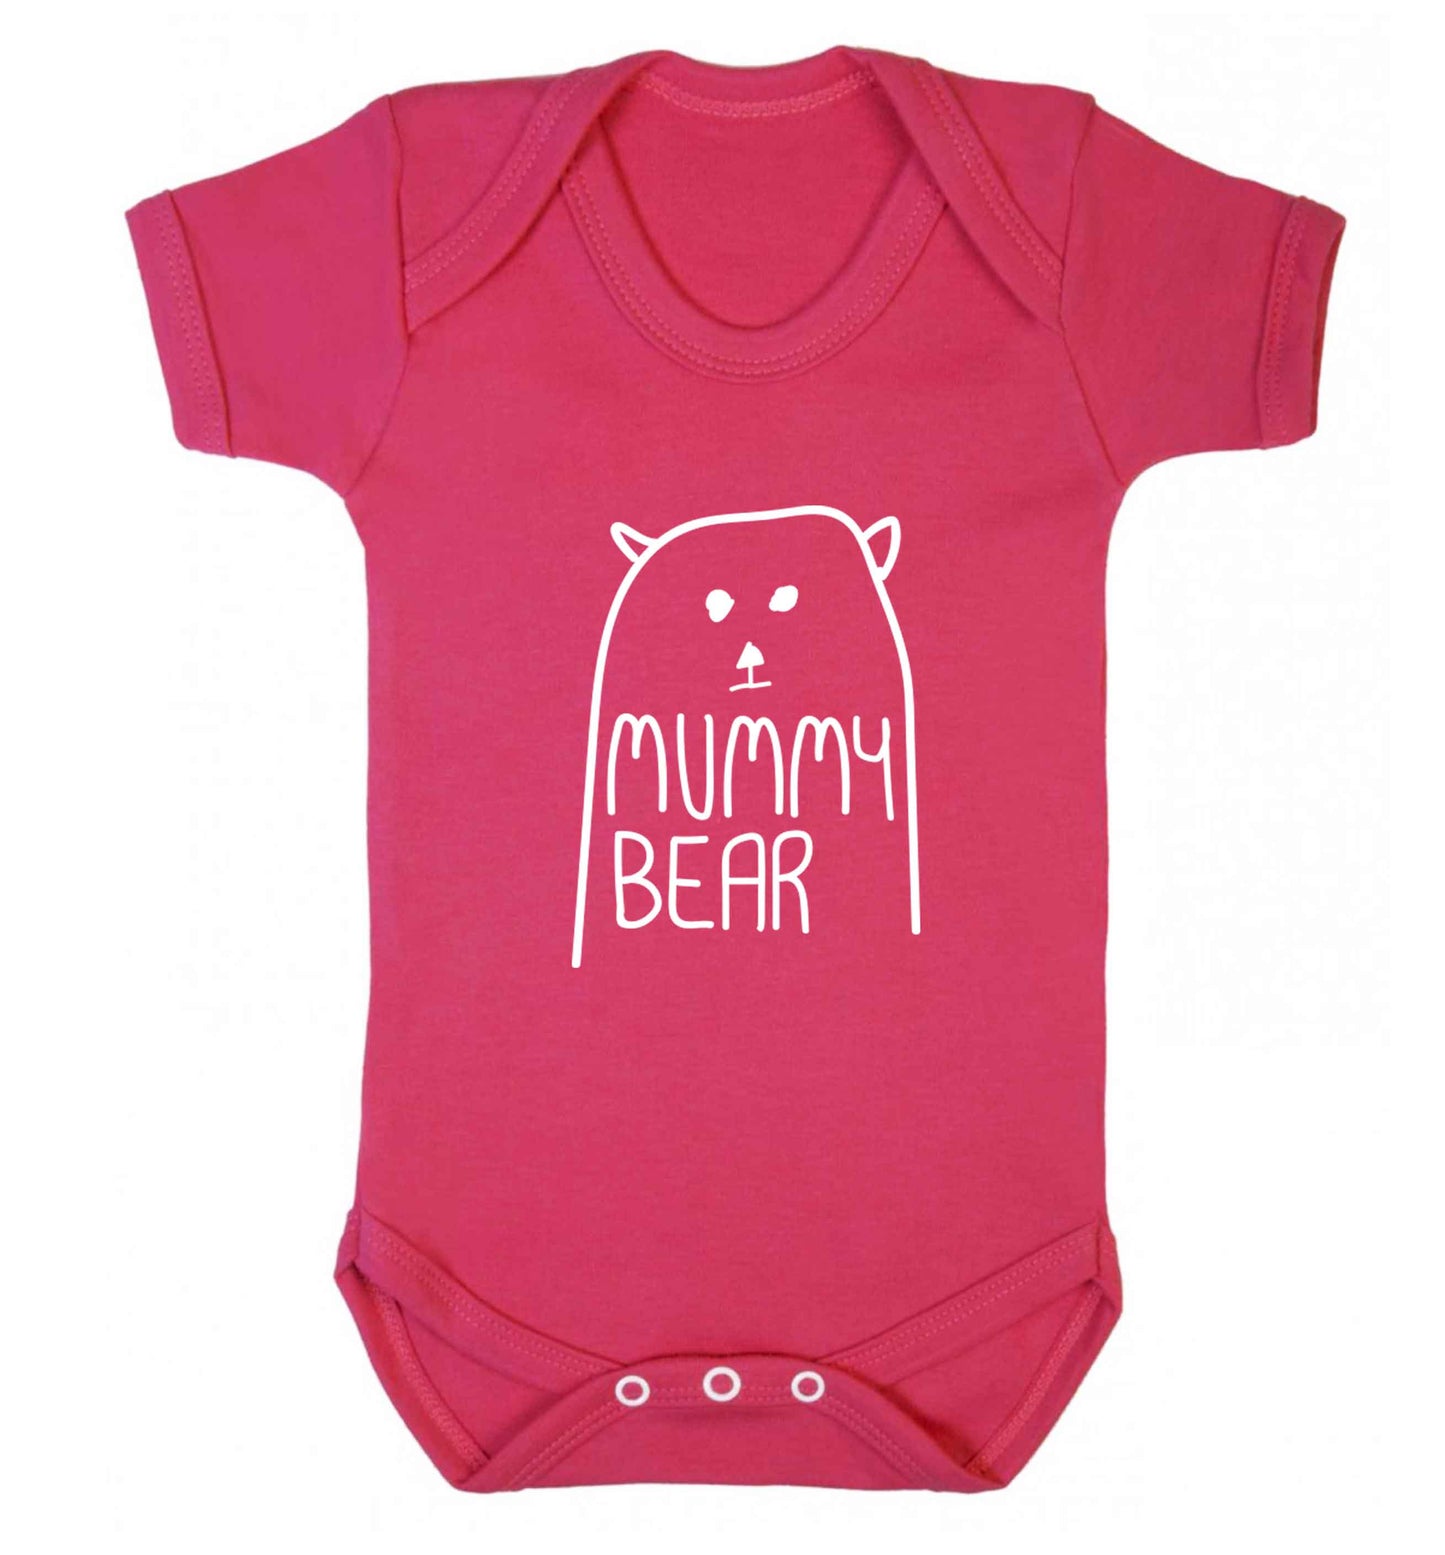 Mummy bear baby vest dark pink 18-24 months